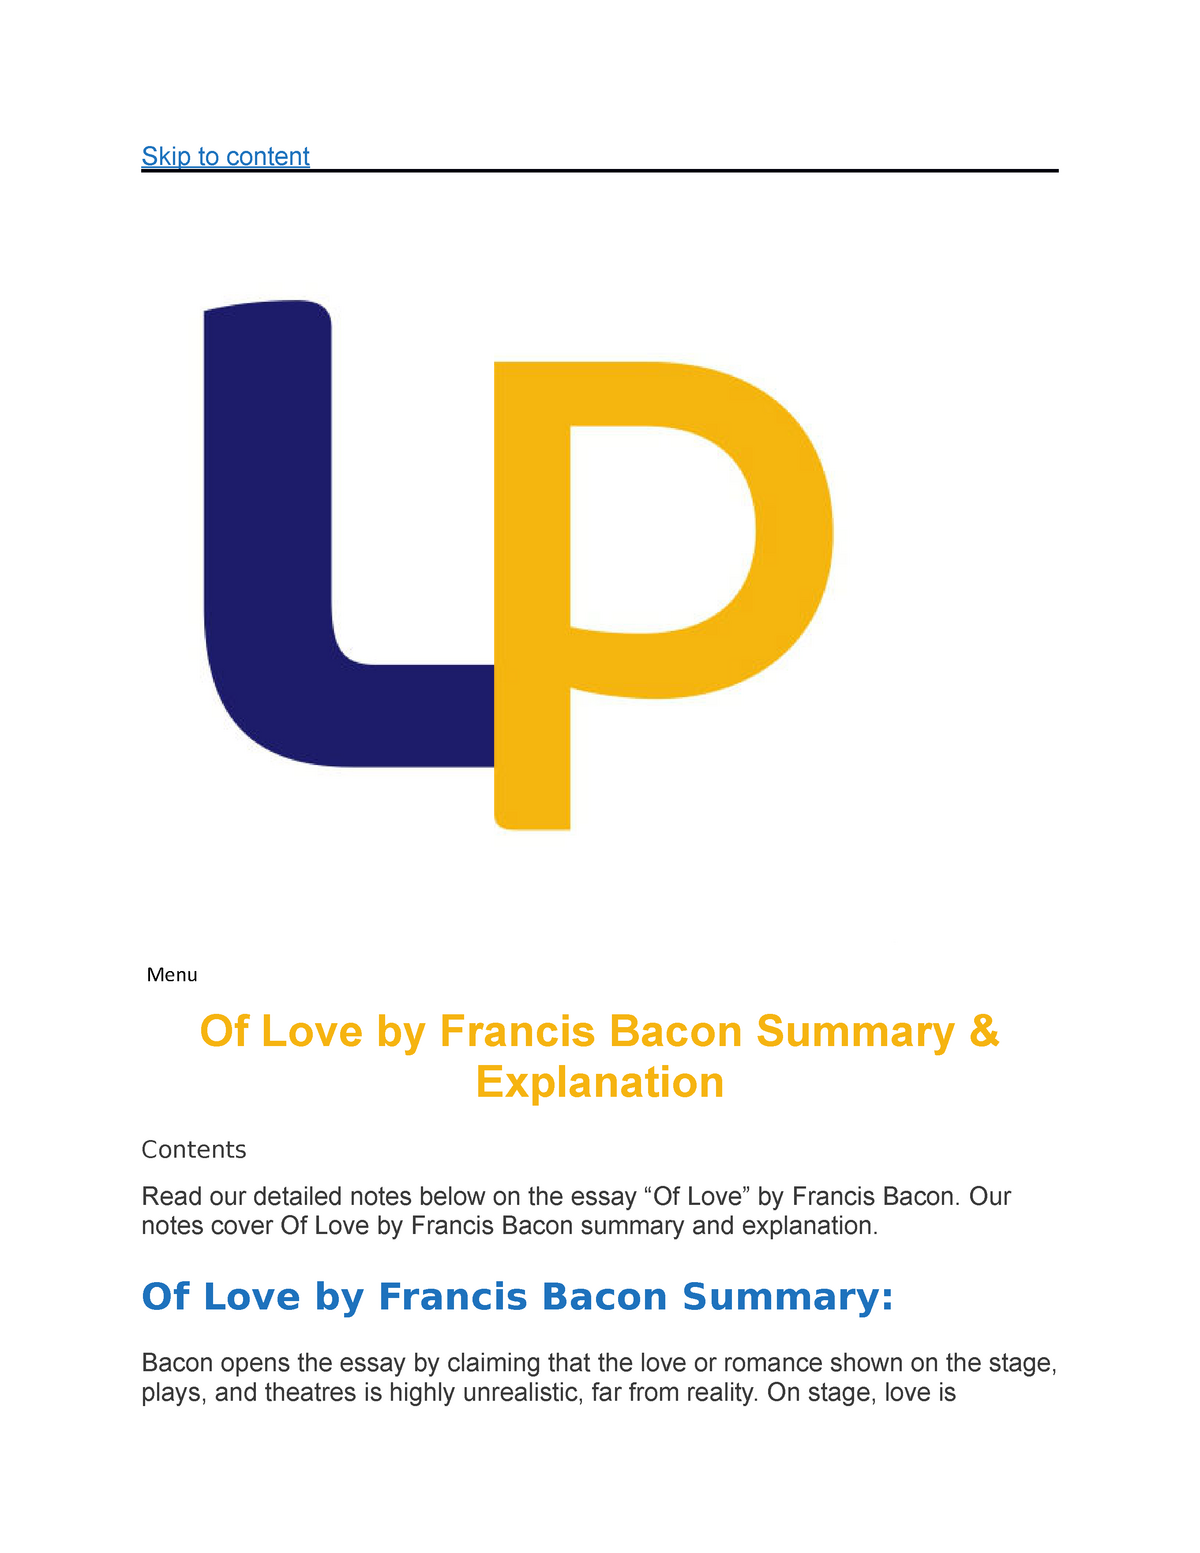 summary of bacon's essay of love